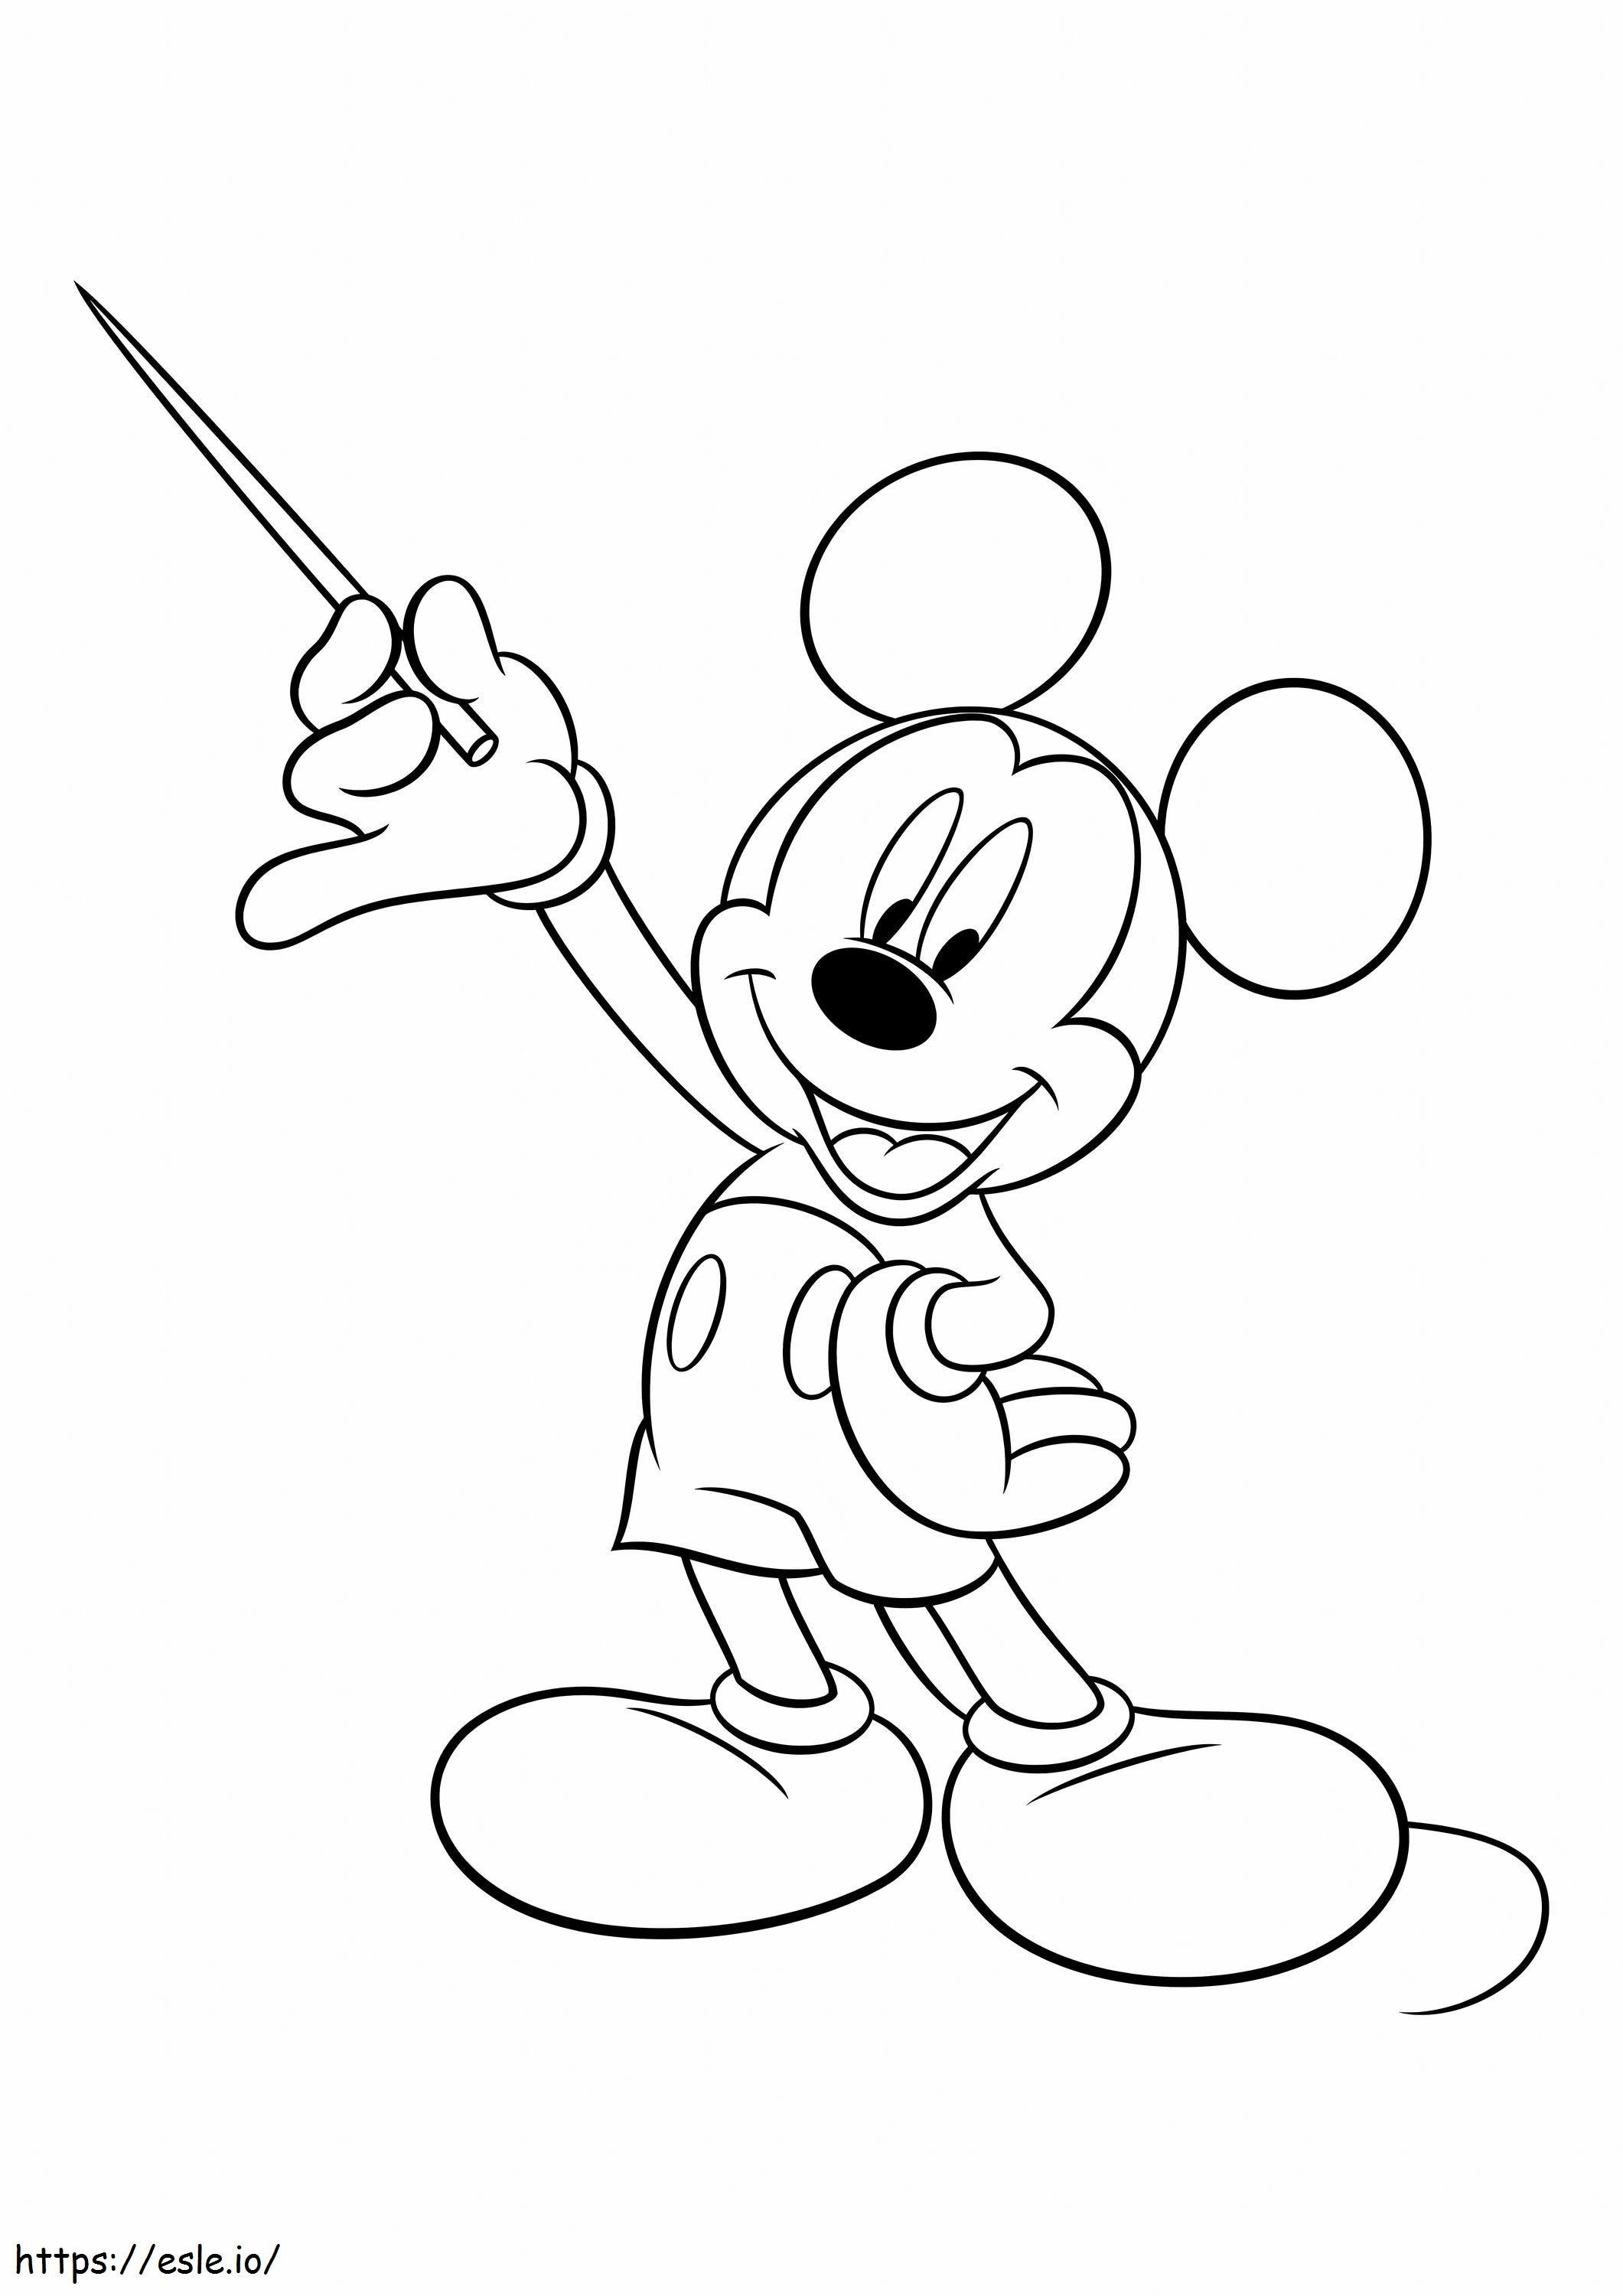 Coloriage Mickey Mouse tenant un bâton à imprimer dessin